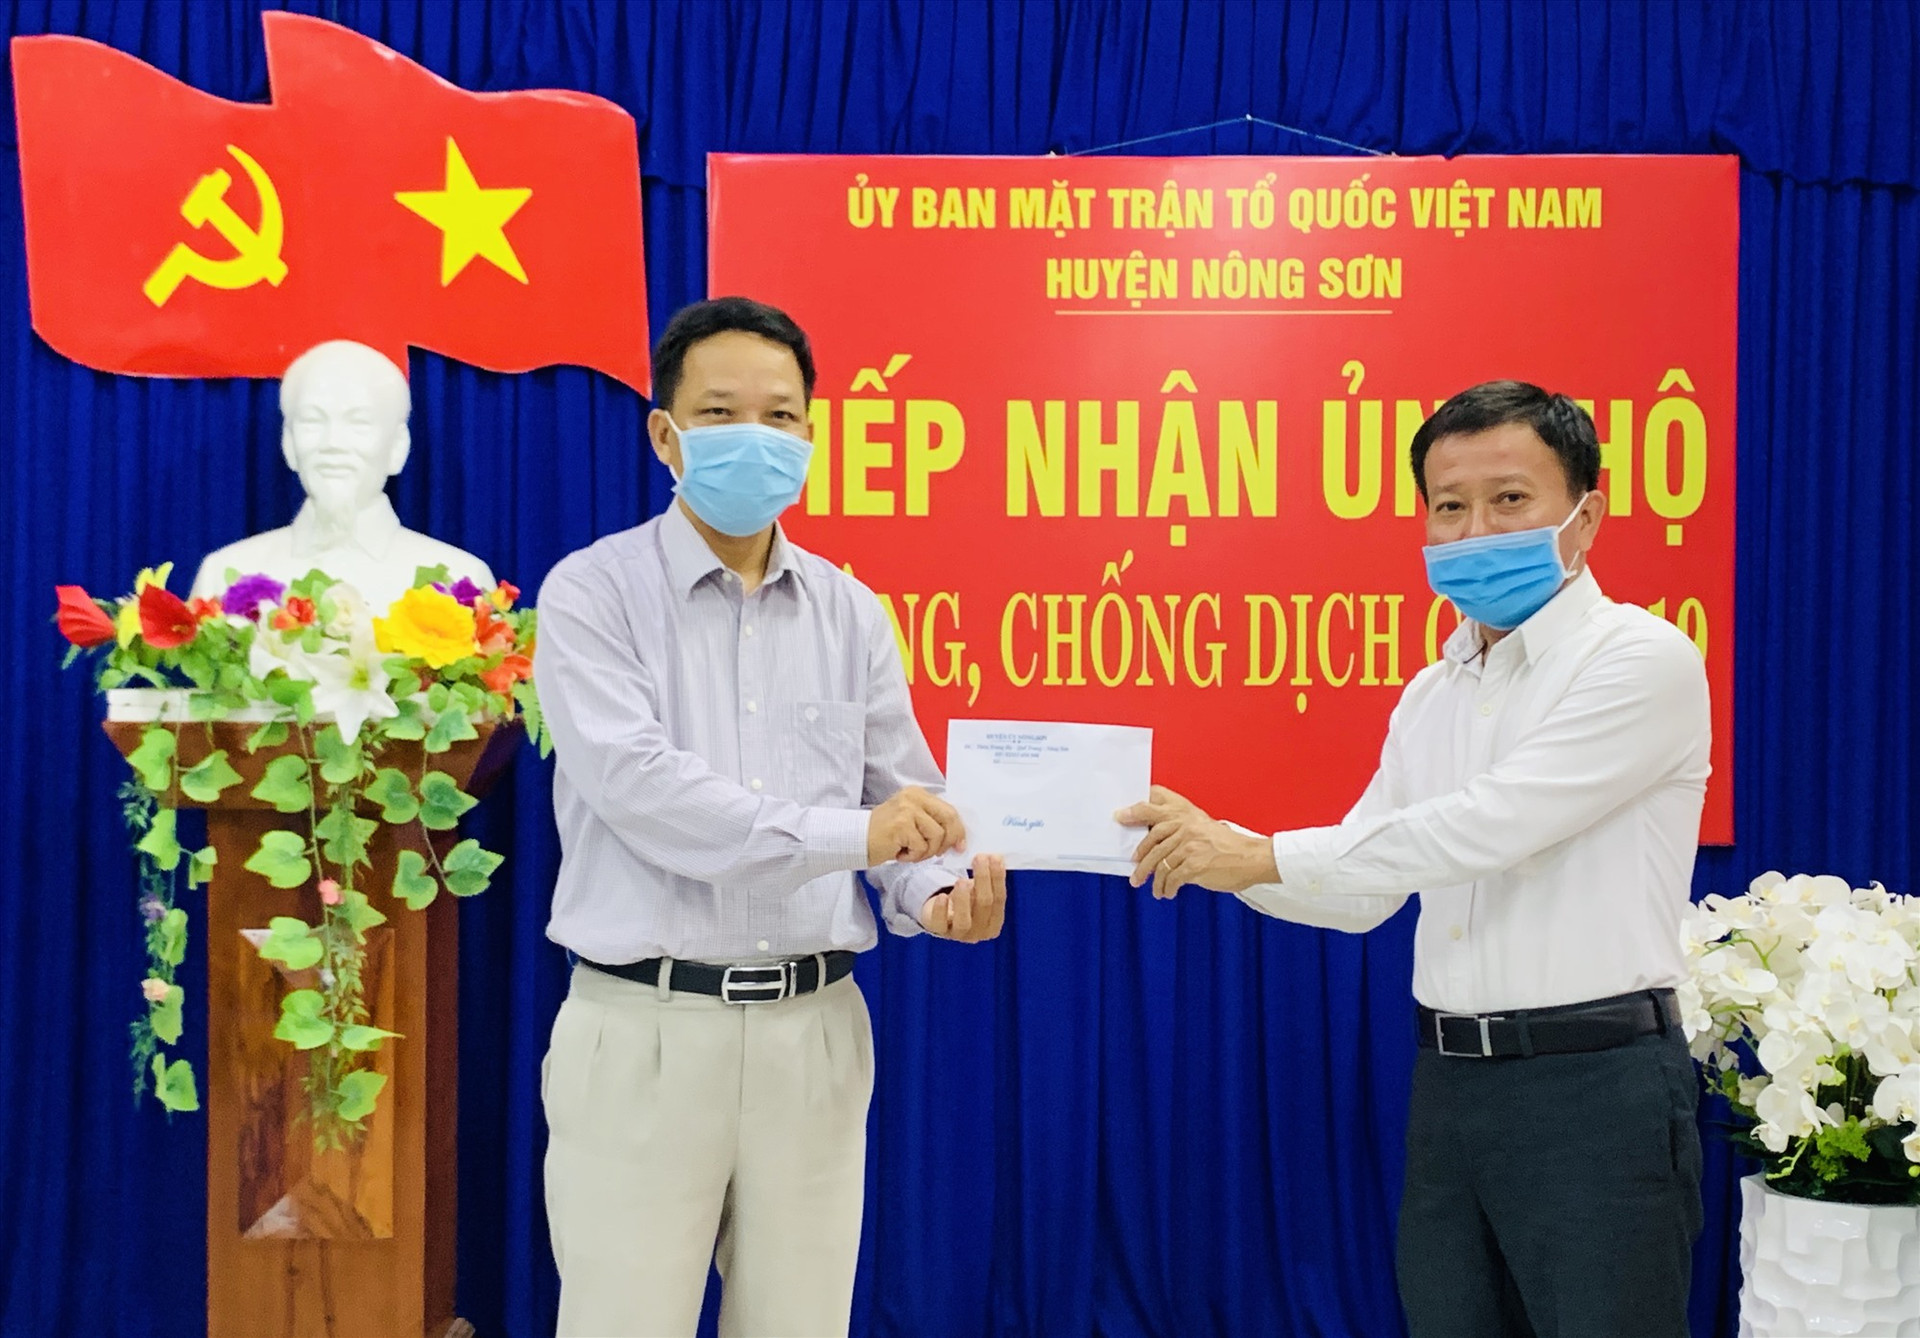 Ông Thái Bình thay mặt cho các doanh nghiệp, nhà hảo tâm trao tiền hỗ trợ cho Ủy ban MTTQ Việt Nam huyện Nông Sơn phục vụ công tác phòng, chống dịch Covid-19. Ảnh: PHAN VINH